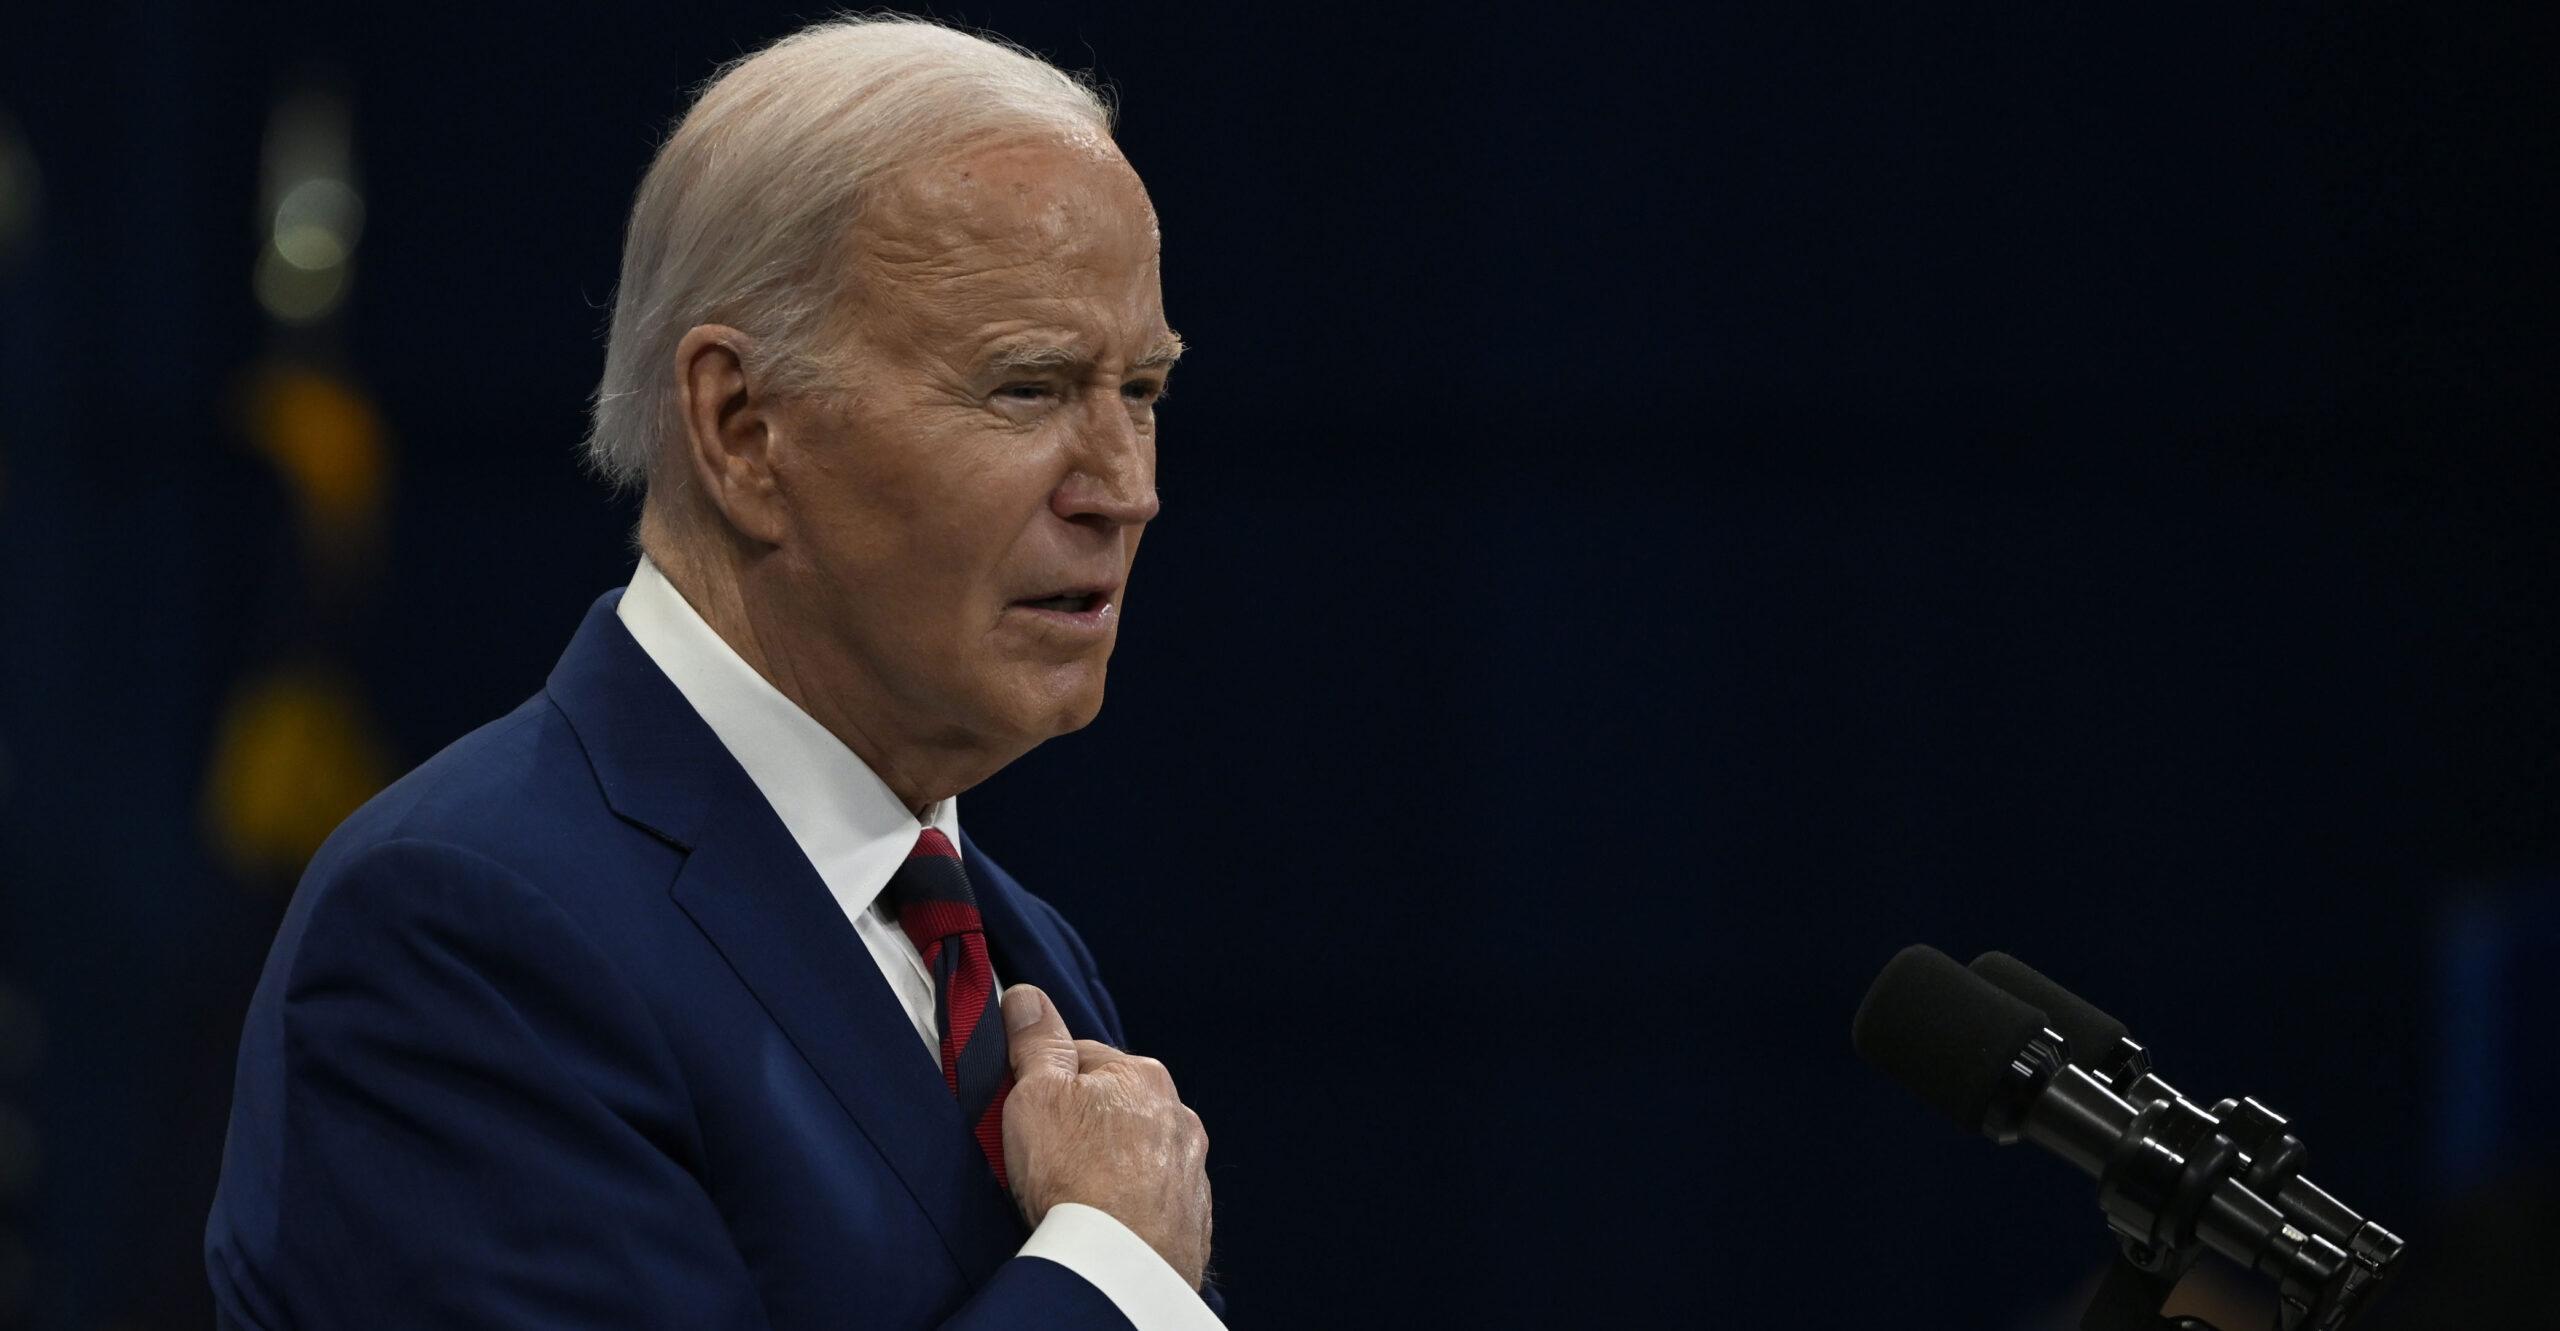 Biden Invited to Testify in Impeachment Investigation